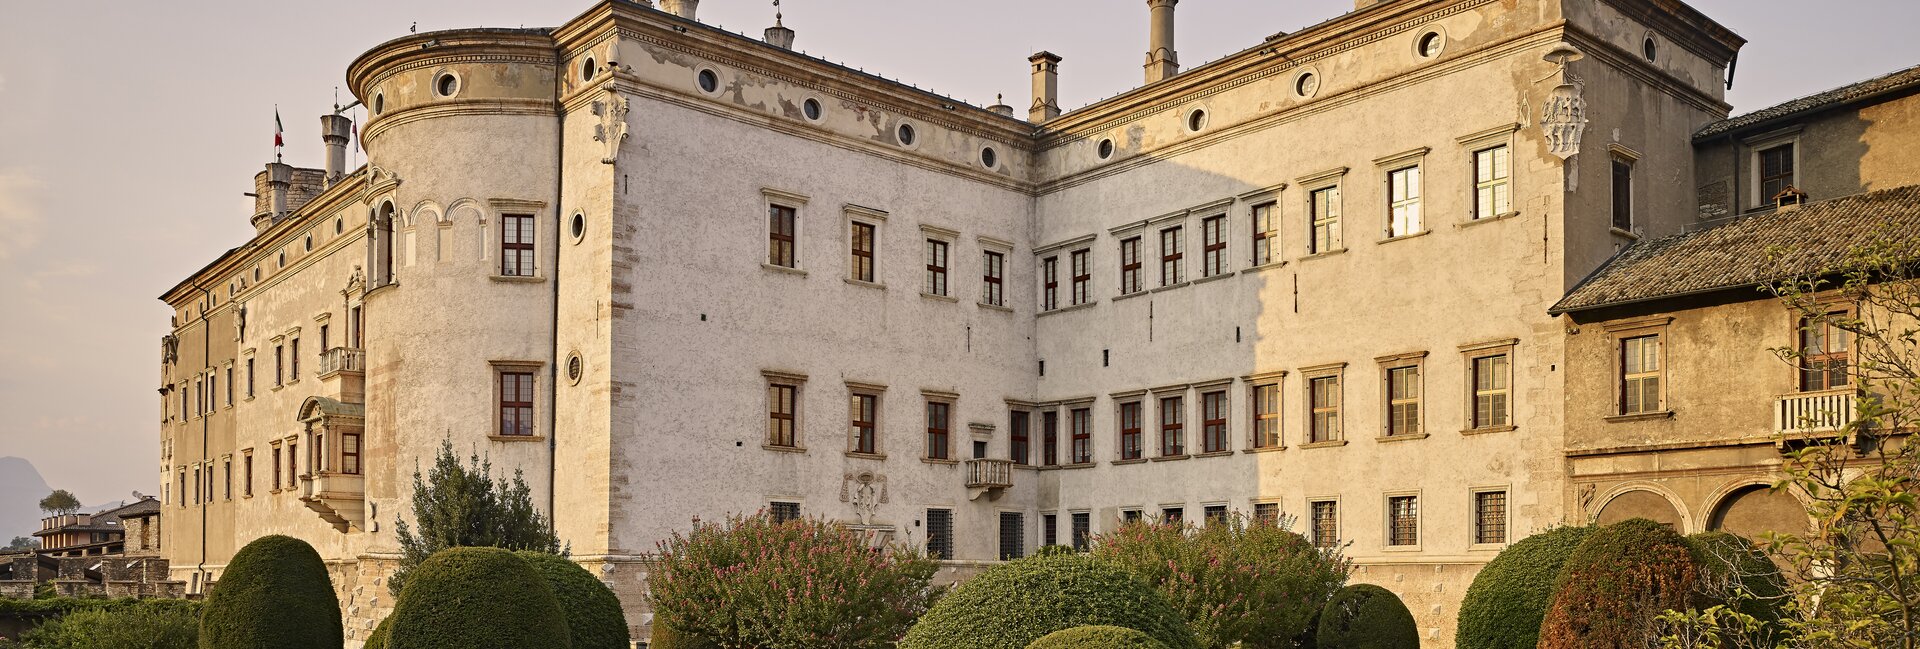 Trento, odwiedź Zamek Buonconsiglio 